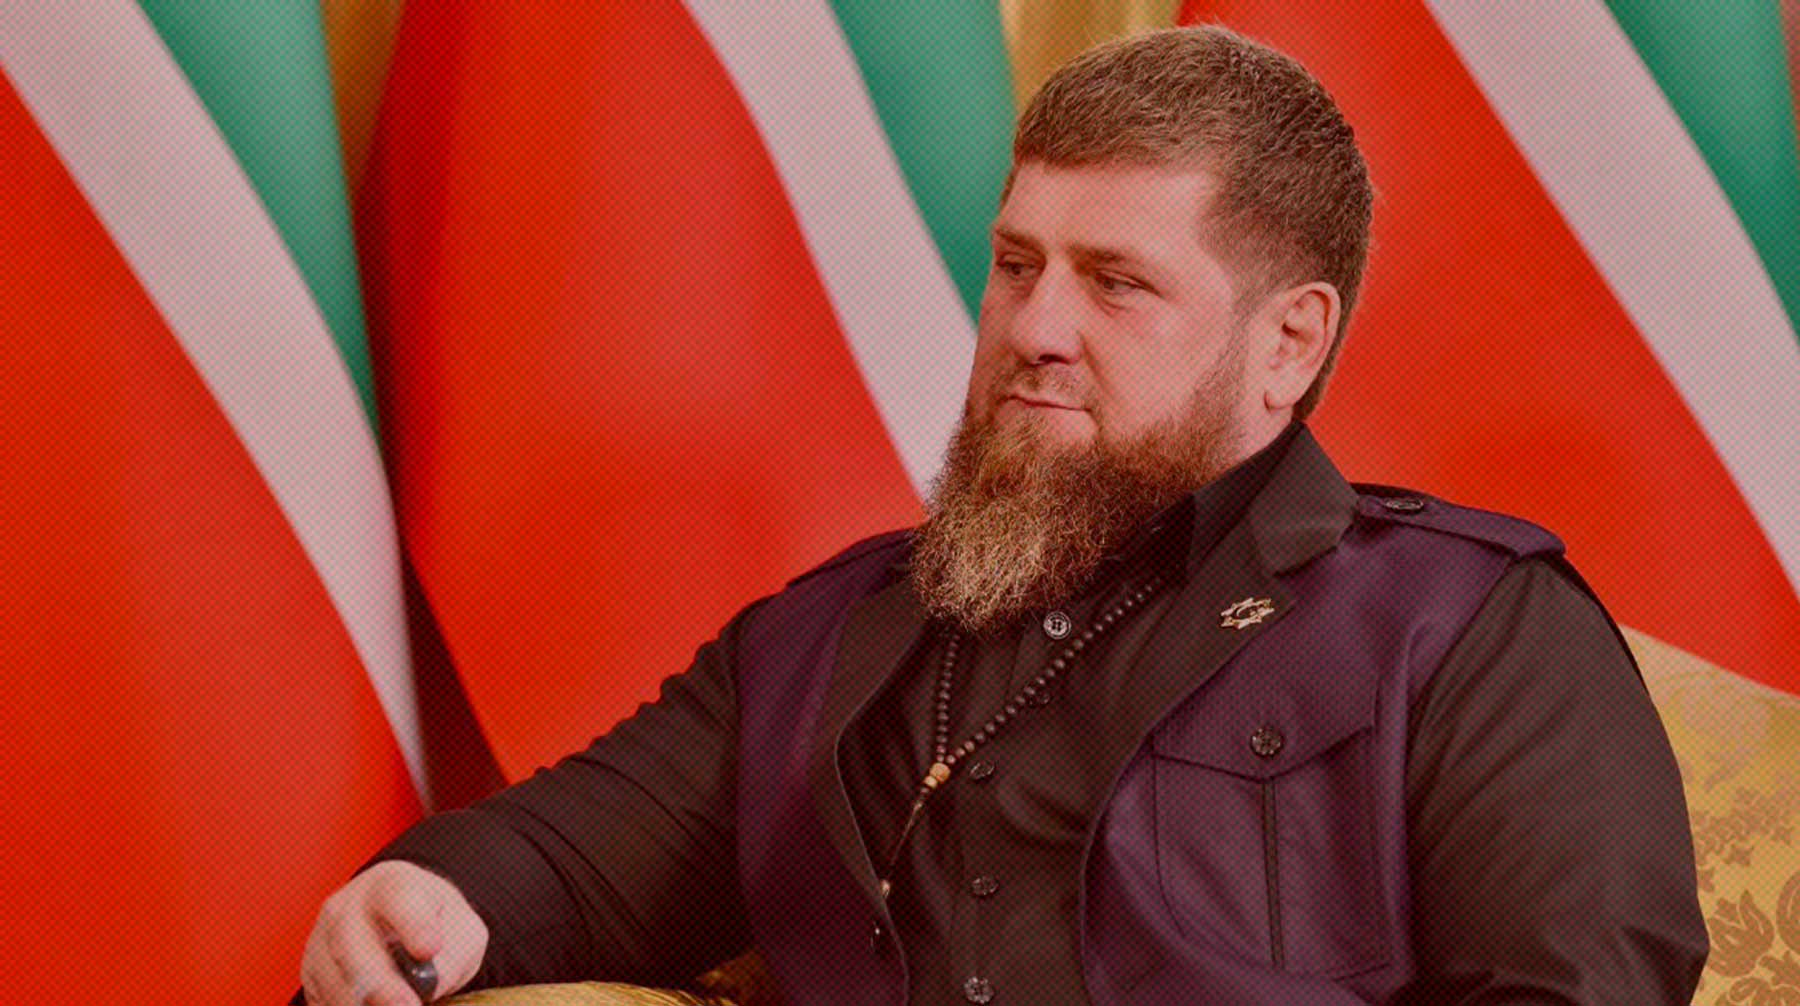 Руководитель Чечни прокомментировал выводы некоторых экспертов, что его высказывание сформировано главой государства Фото: Global Look Press / Министерство культуры РФ